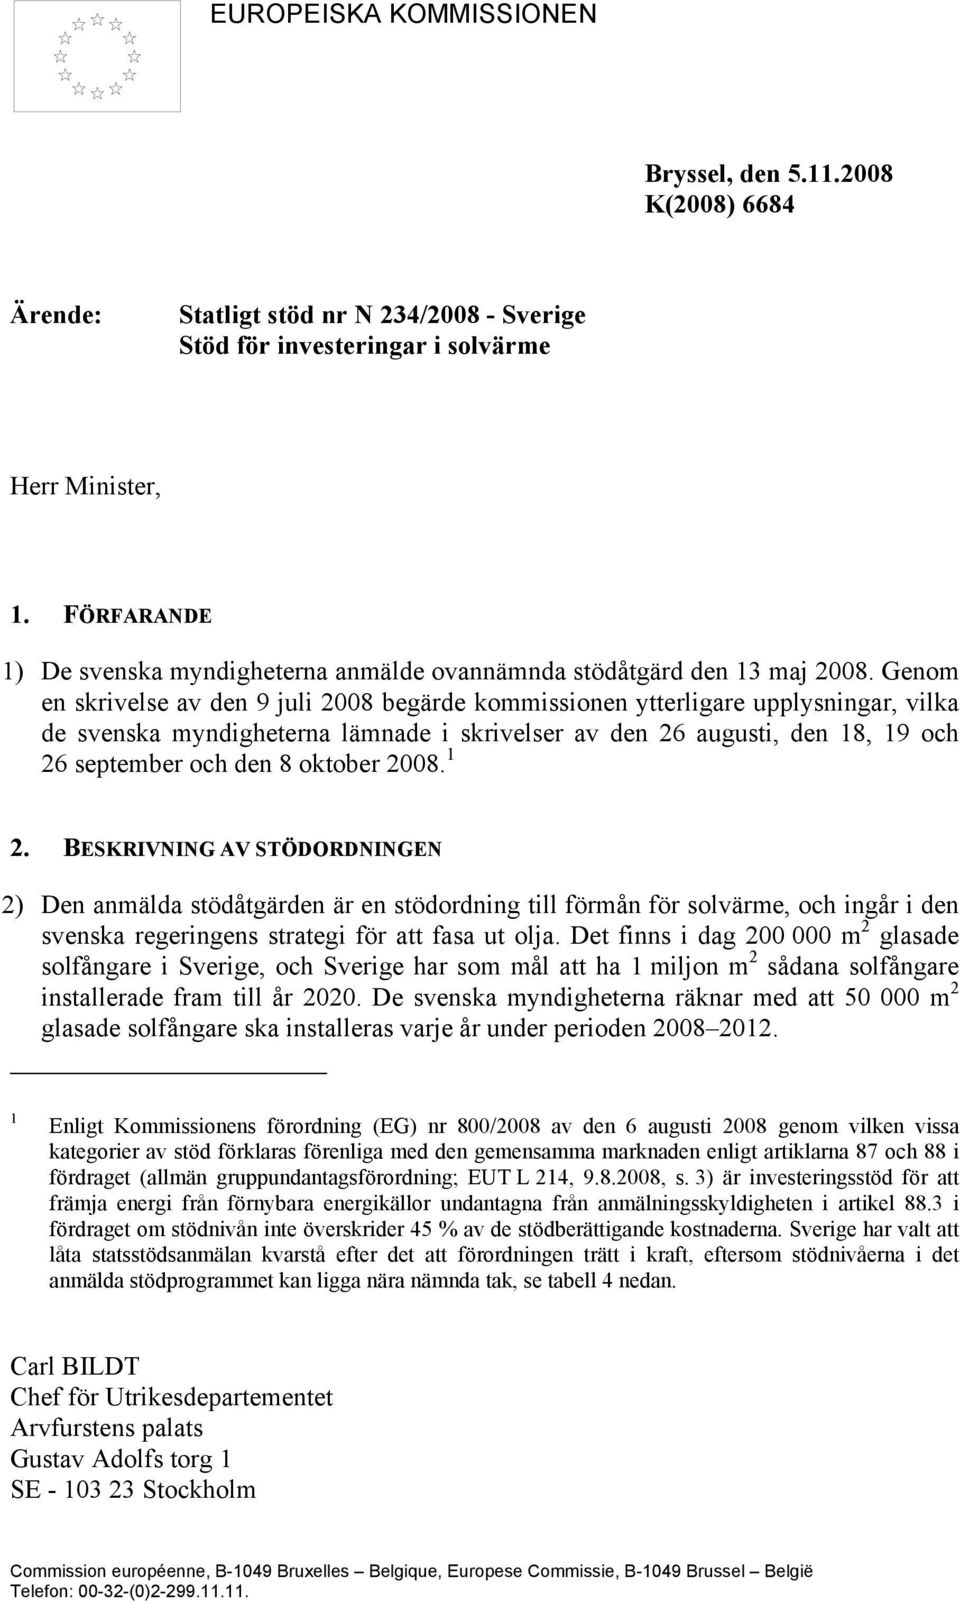 Genom en skrivelse av den 9 juli 2008 begärde kommissionen ytterligare upplysningar, vilka de svenska myndigheterna lämnade i skrivelser av den 26 augusti, den 18, 19 och 26 september och den 8